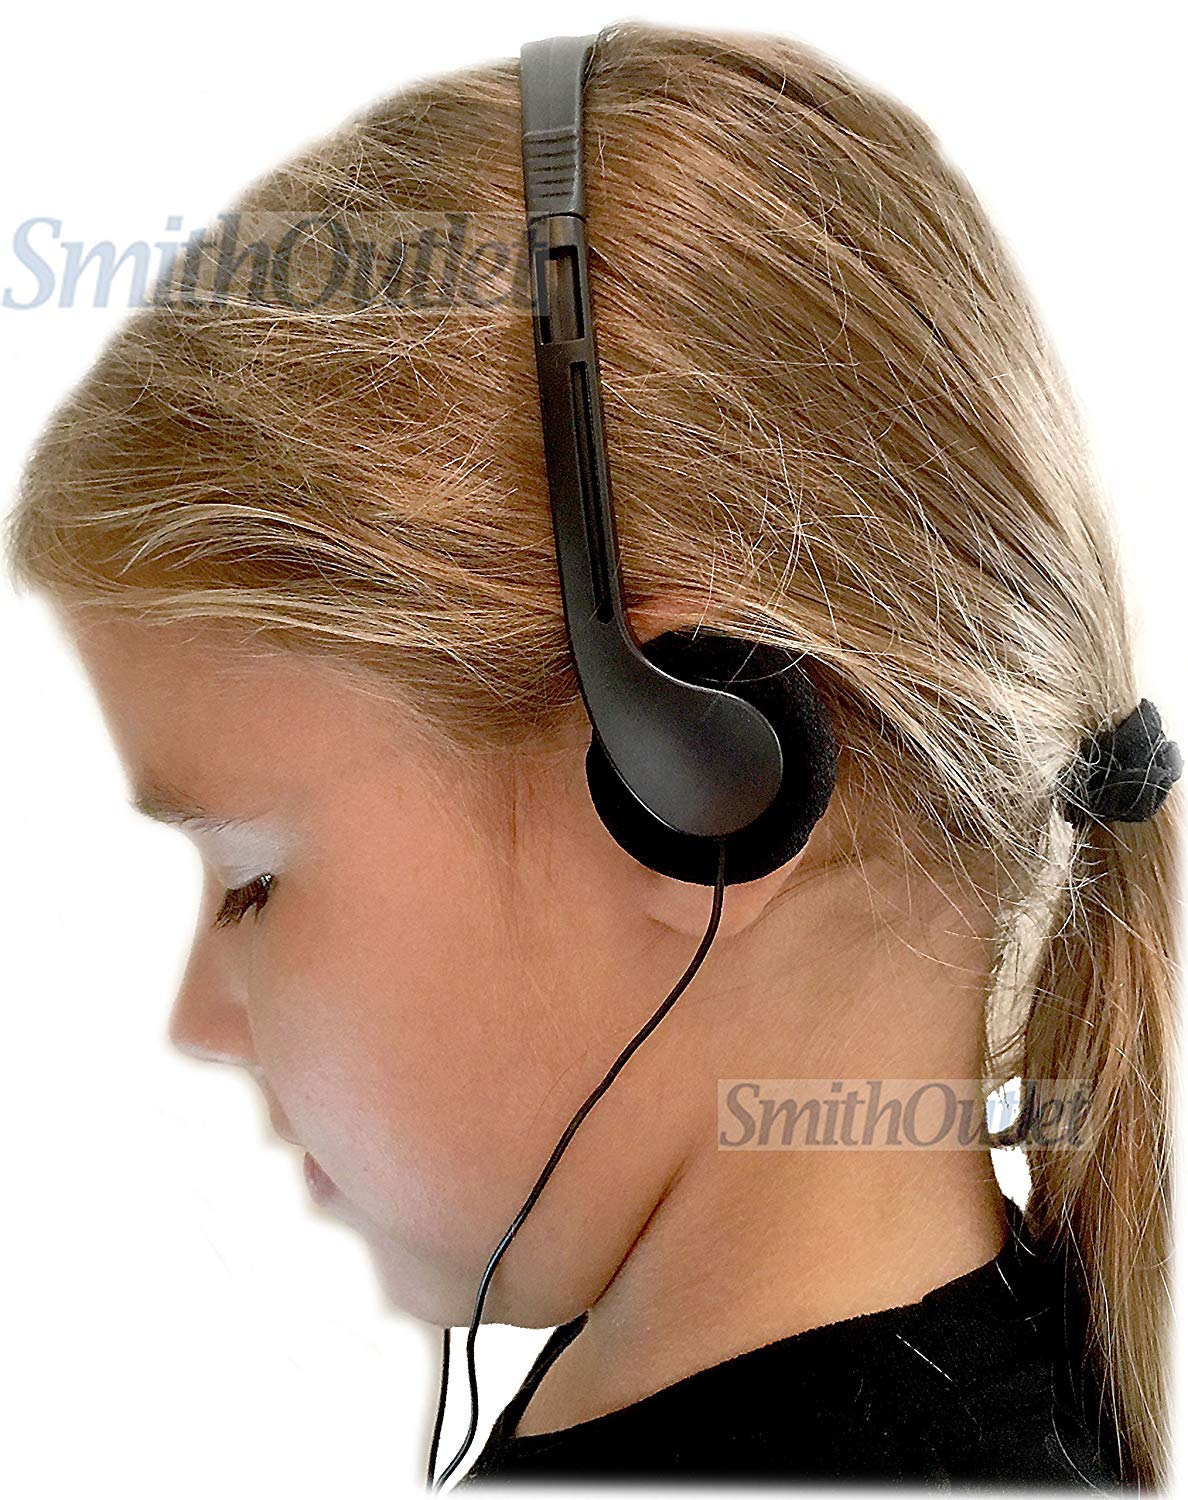 10-Pack Low-Cost Headphones for Schools & Model View